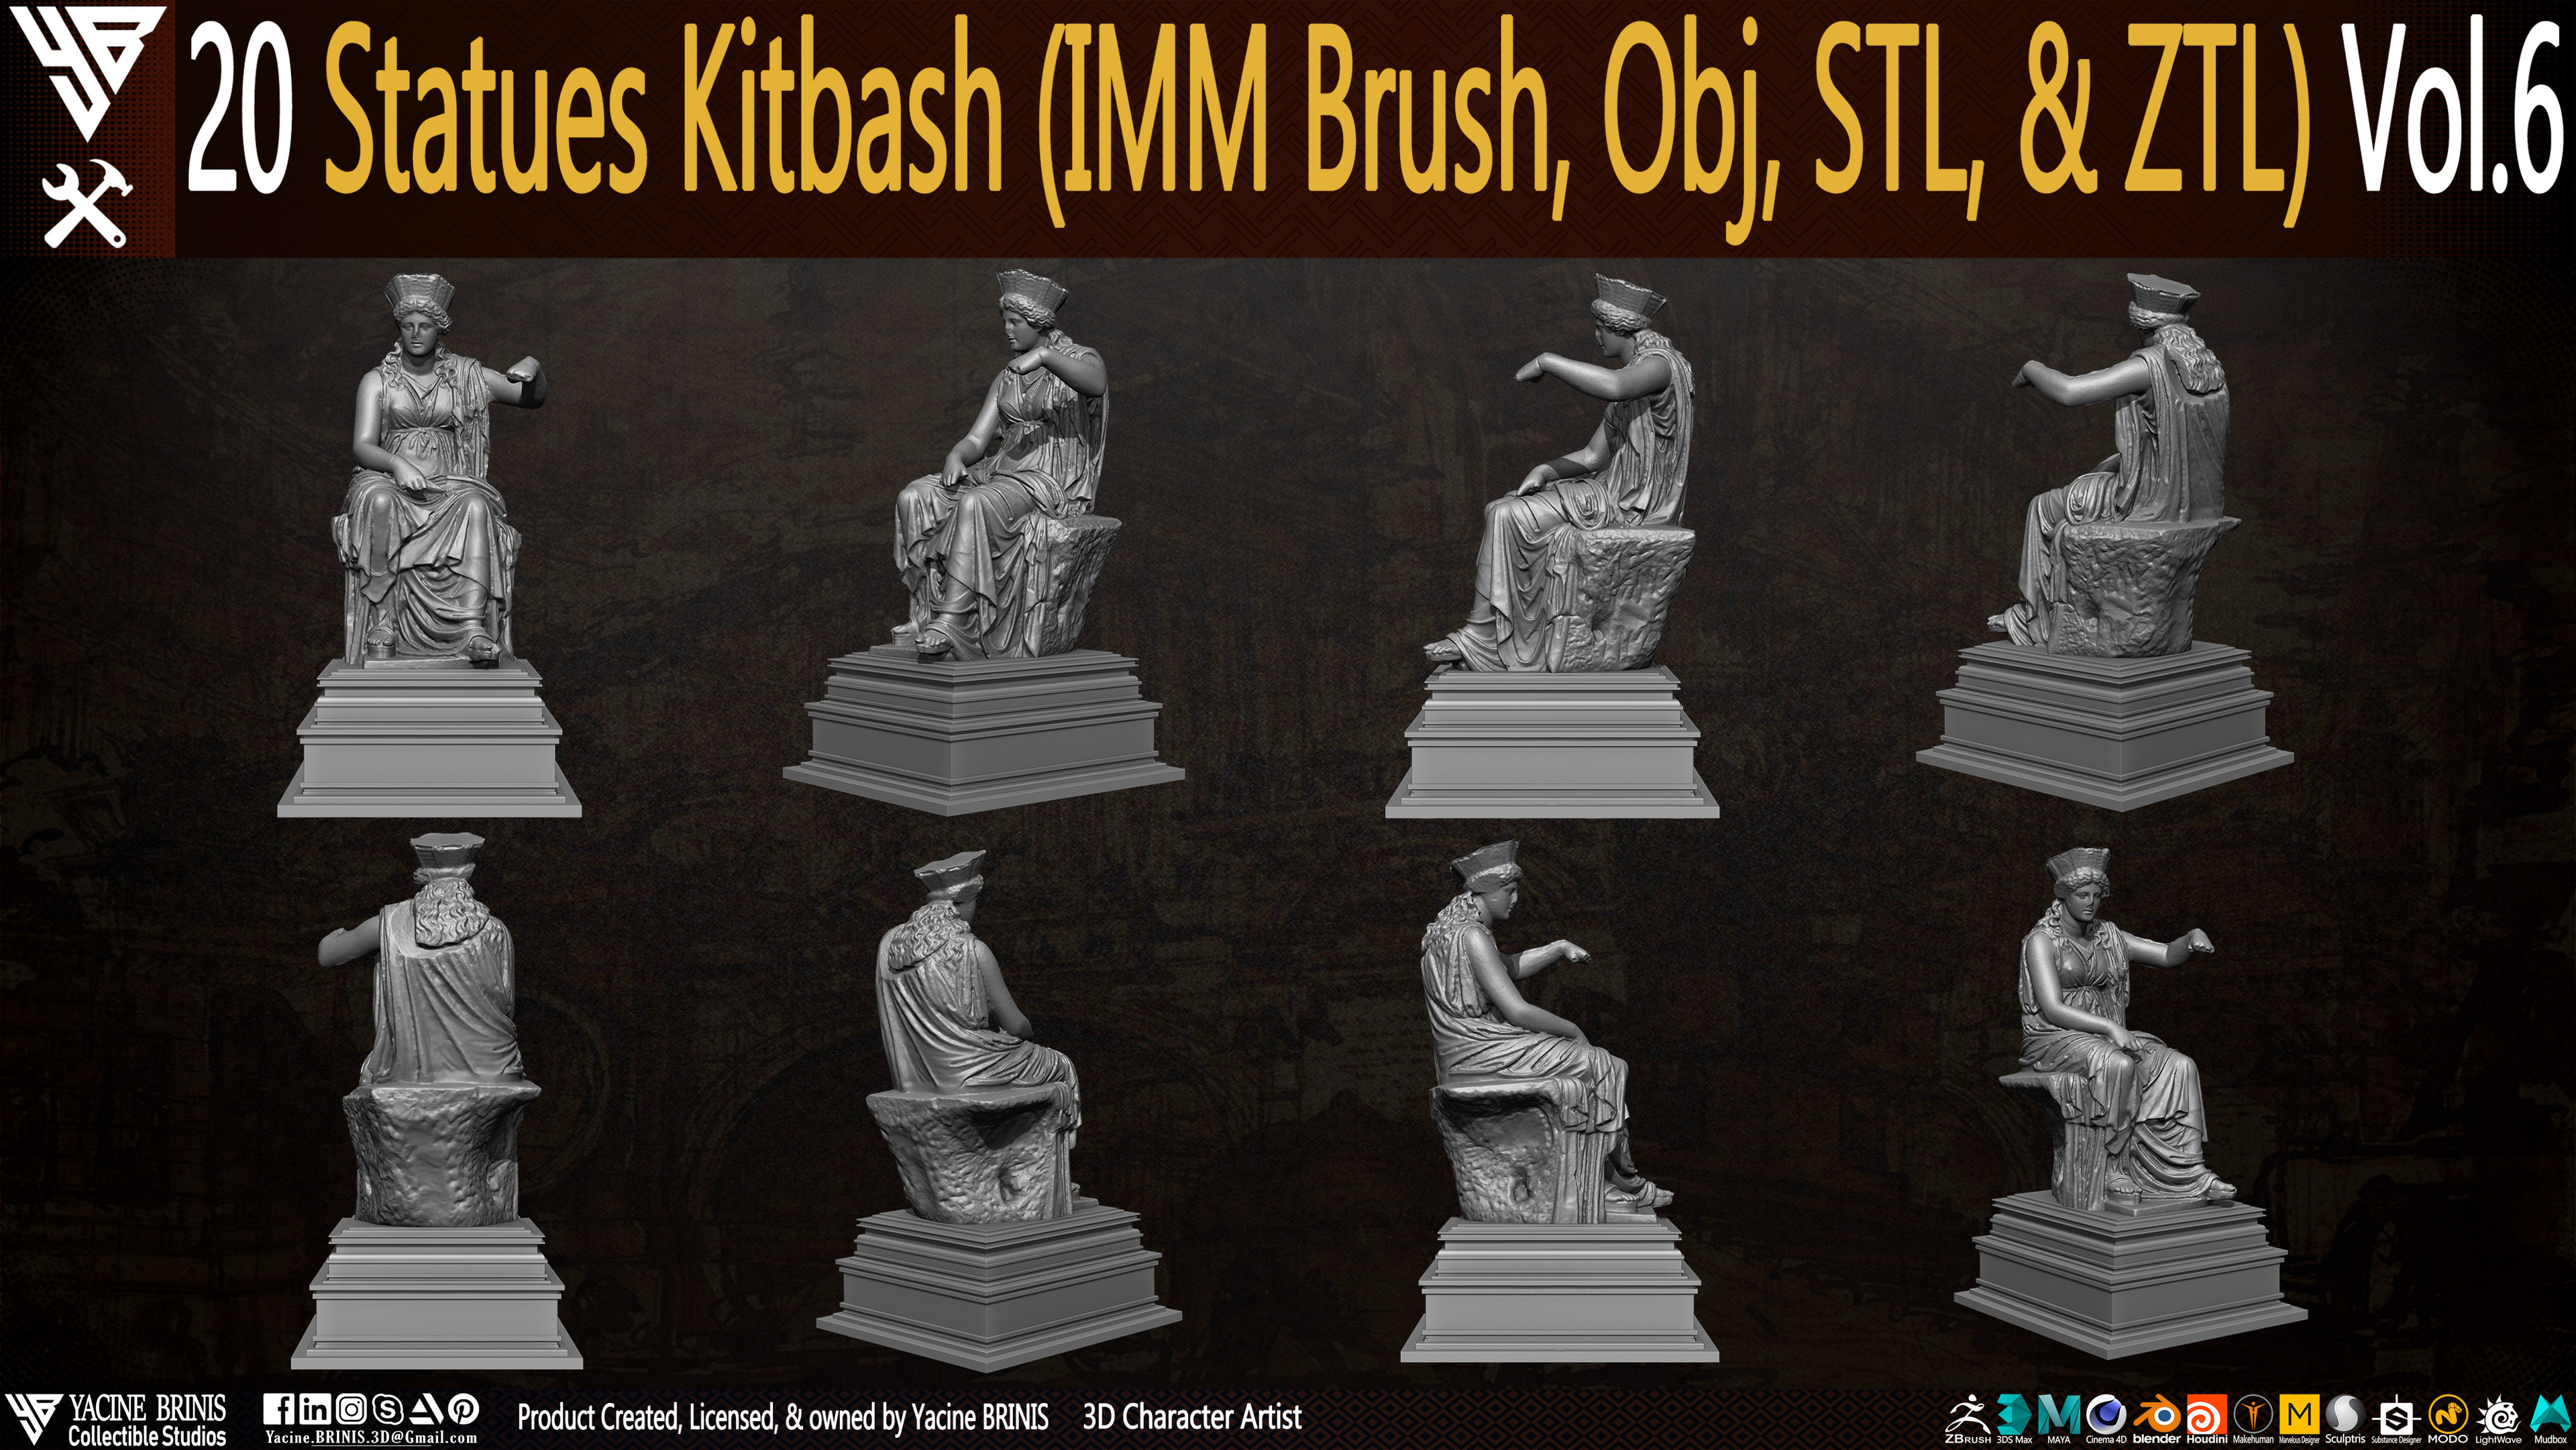 Statues Kitbash by yacine brinis Set 42